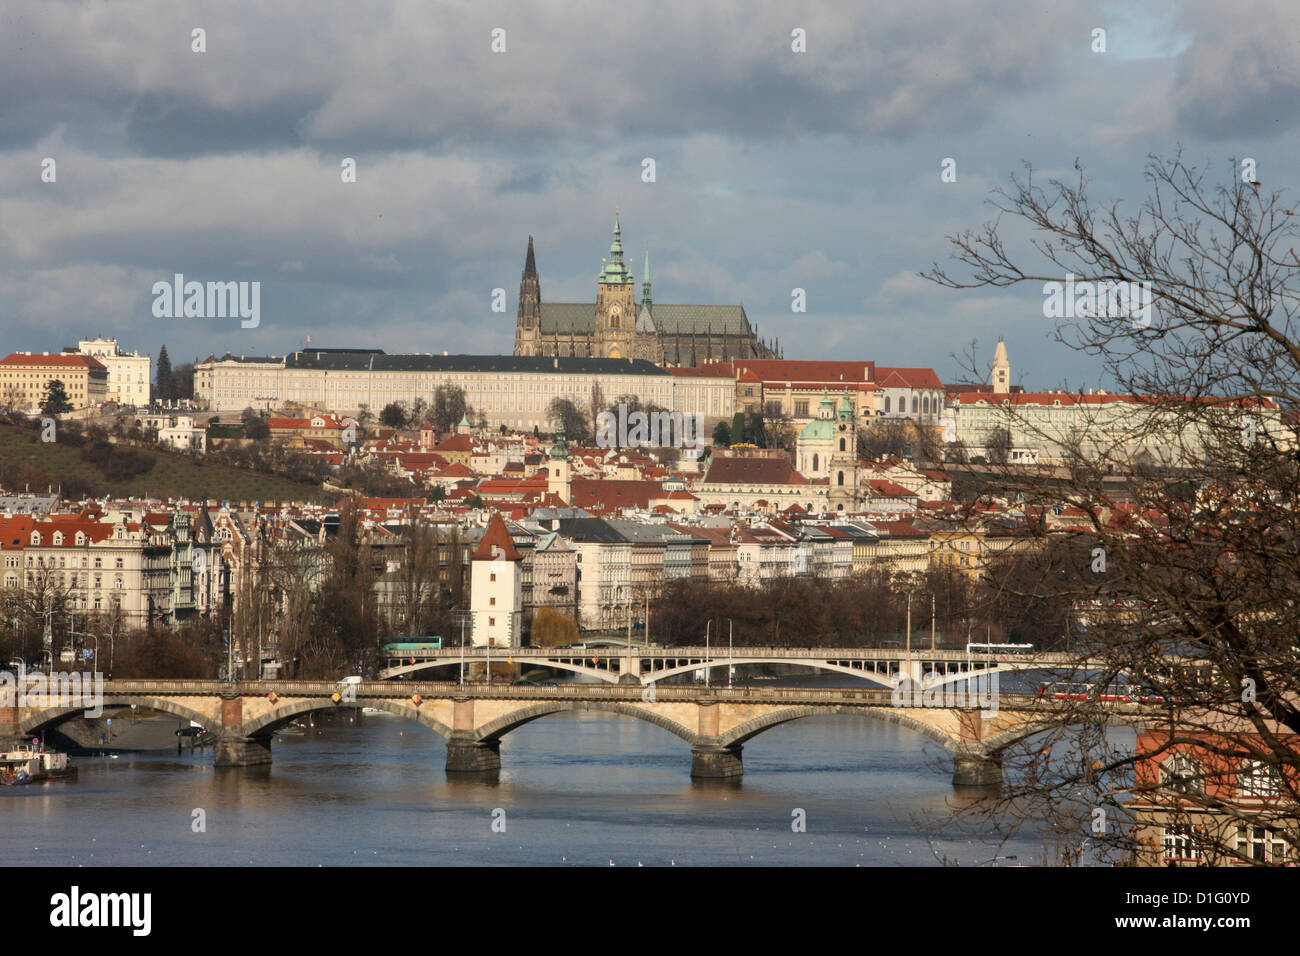 La Cathédrale Saint-Guy, au Château de Prague et la rivière Vltava, Site du patrimoine mondial de l'UNESCO, Prague, République Tchèque, Europe Banque D'Images